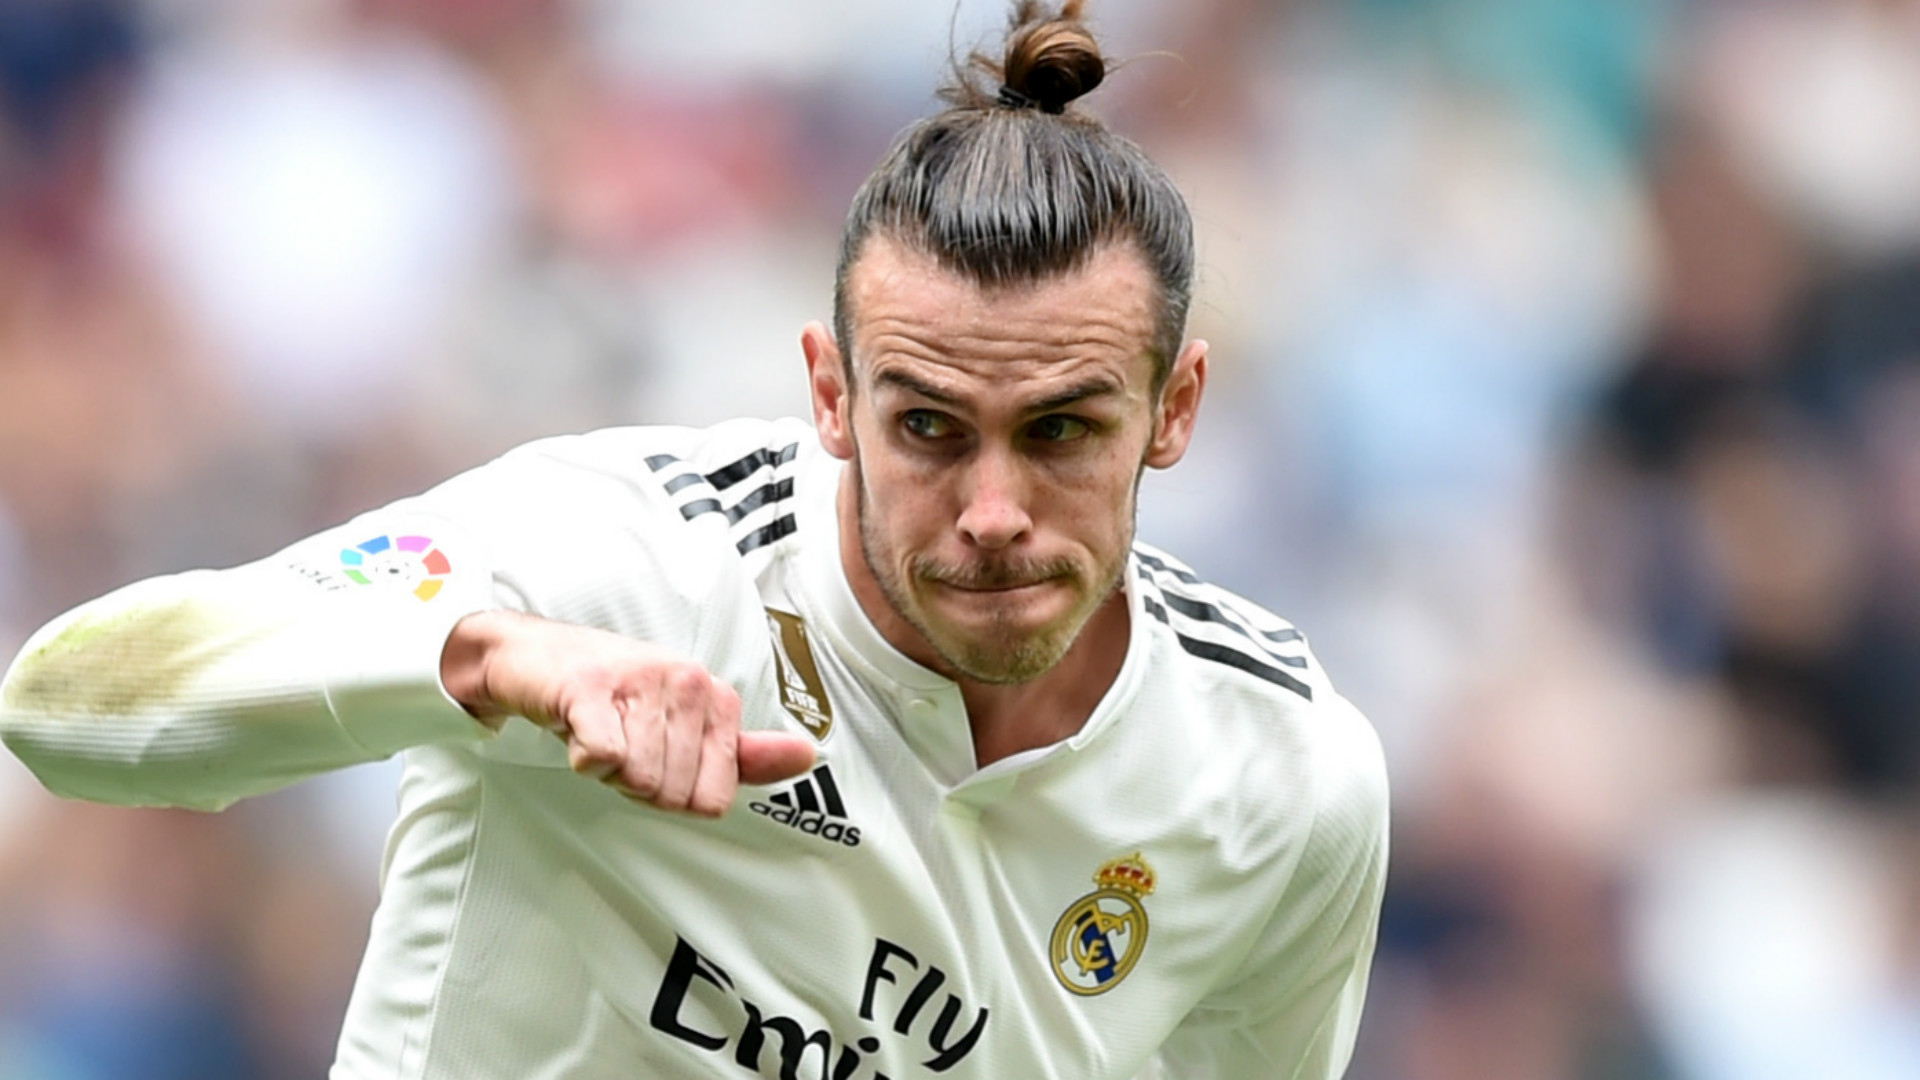 Bale, Real, Gareth bale, Real Madrid, bale treo giò, bale bị cấm, La LIga, tin bong đá, tin tức Real